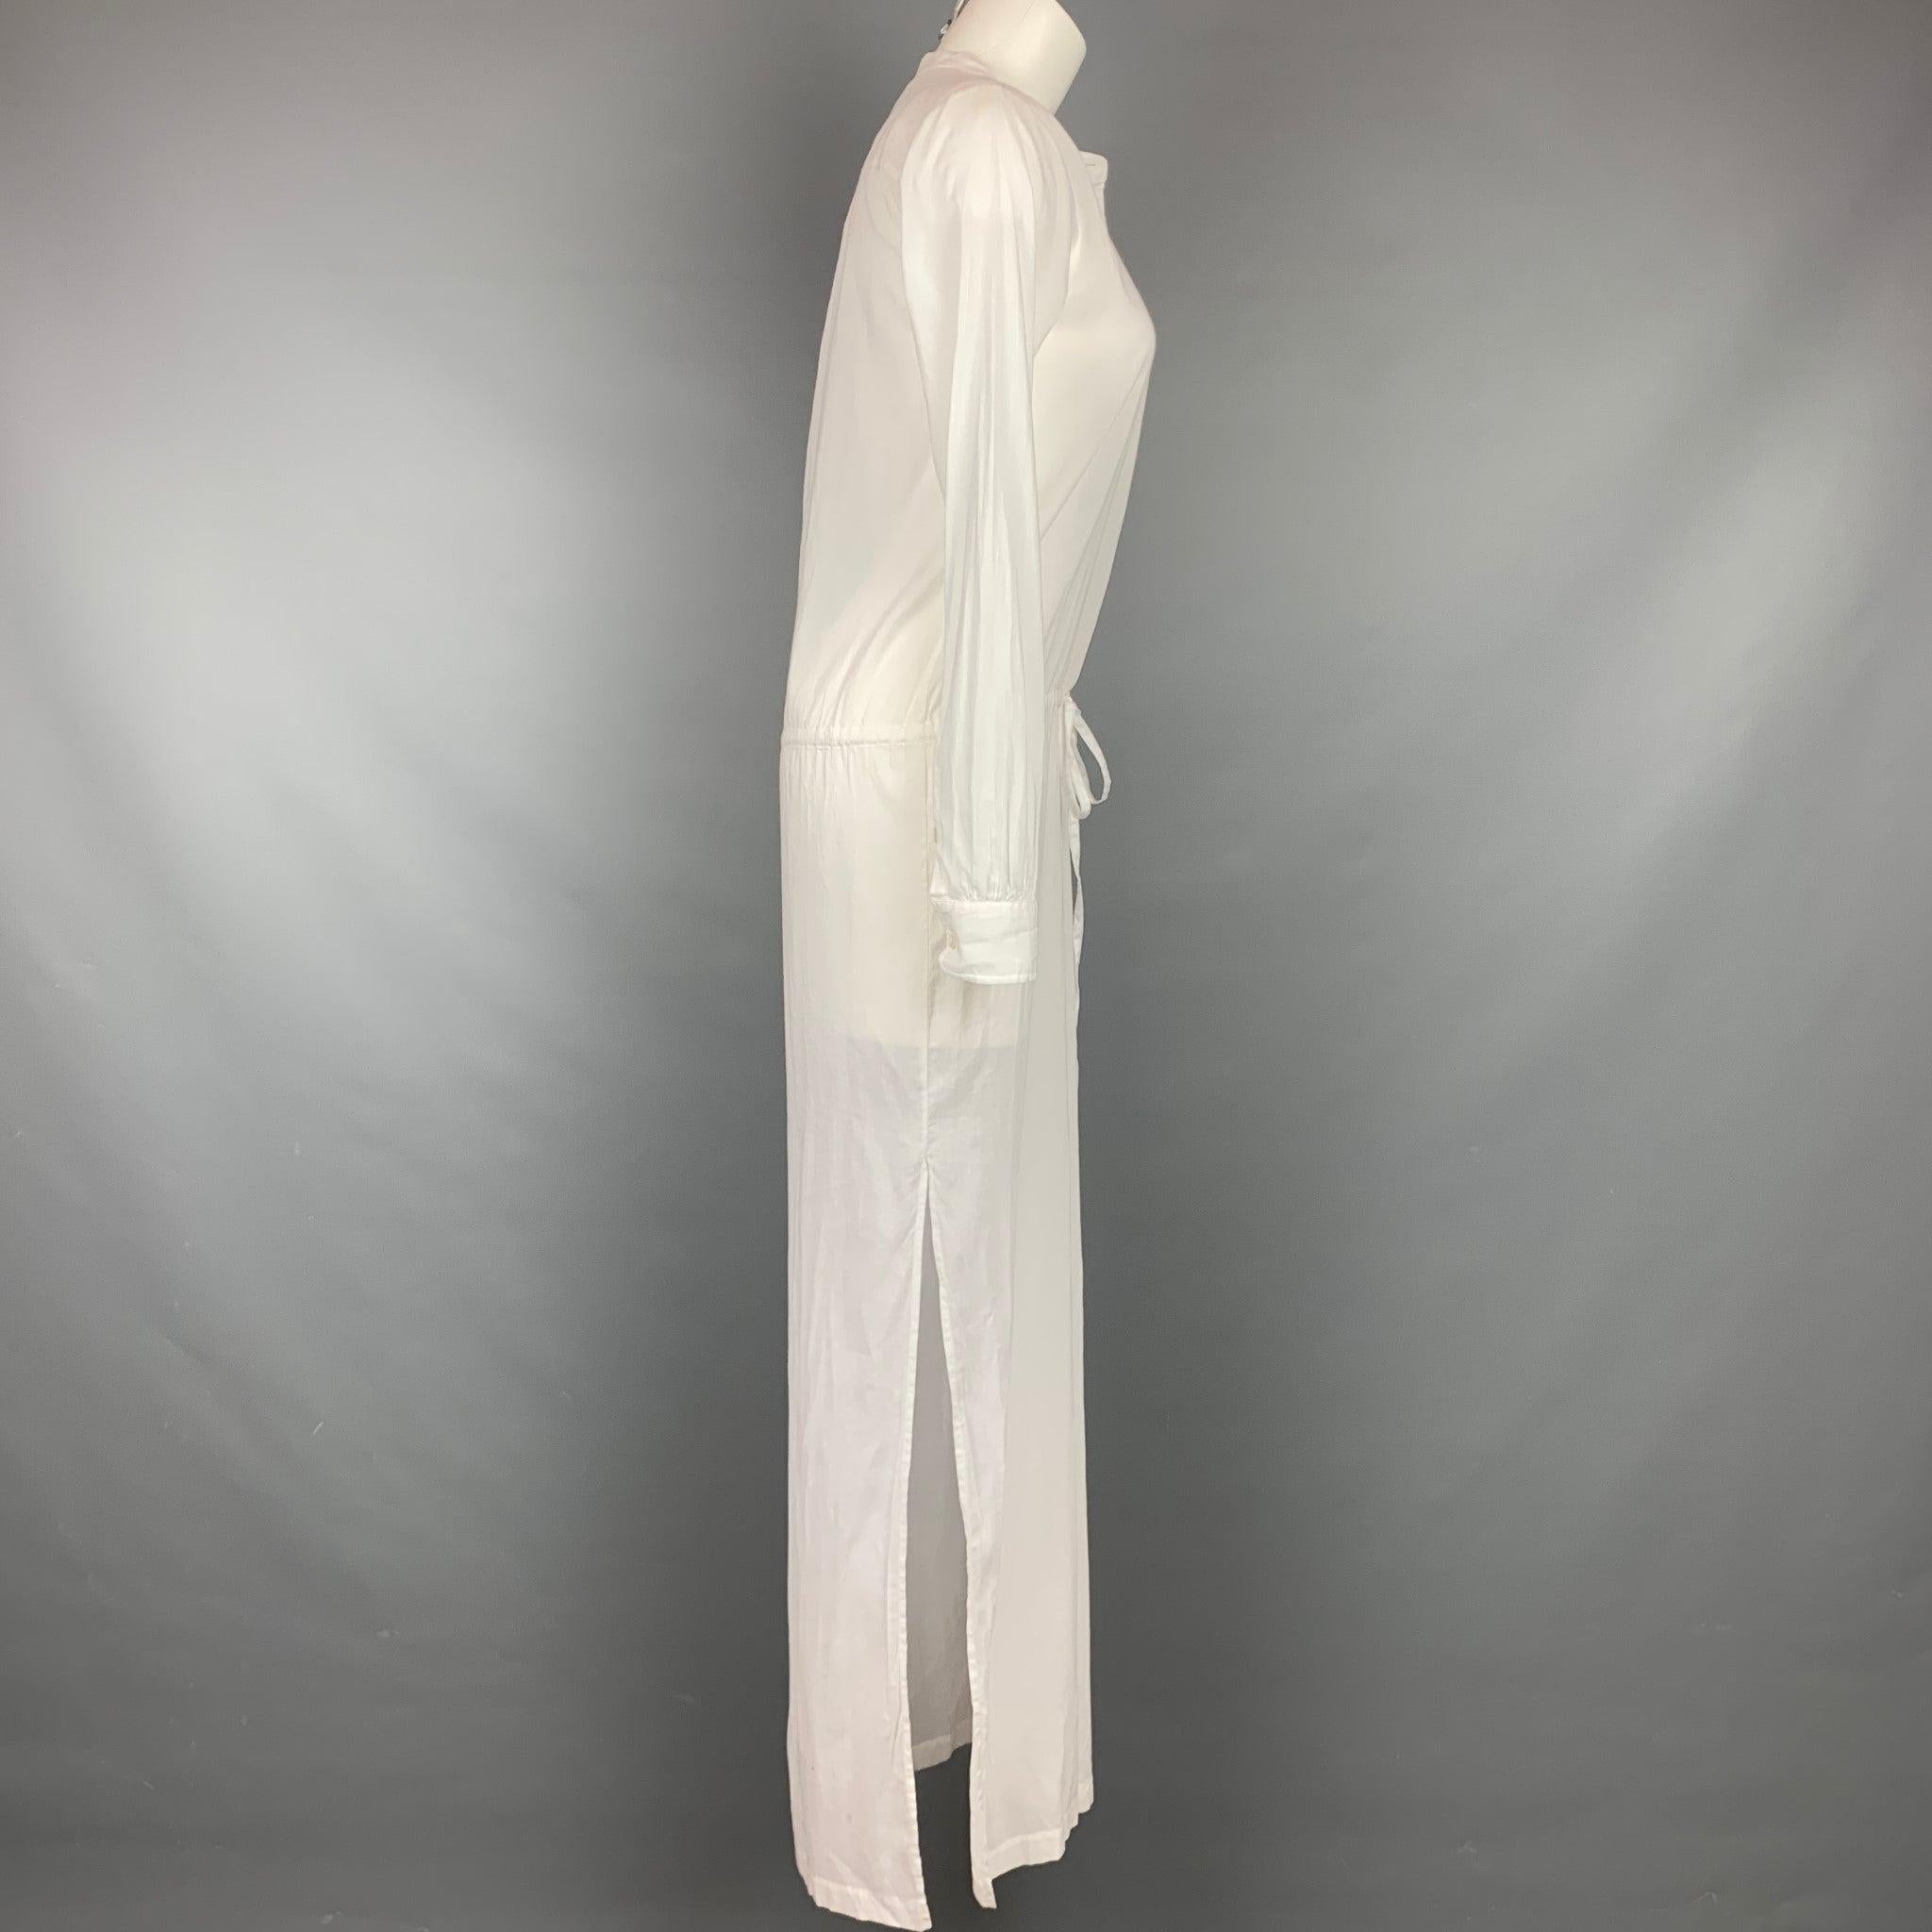 THEORY Kleid aus weißer Baumwolle mit Nehru-Kragen, Kordelzug, Vordertasche, Schlitzen und Knopfverschluss. Kommt mit Tags.gut
Gebrauchtes Zustand. Leichte Verfärbungen auf der Vorder- und Rückseite. 

Markiert:   P/TP 

Abmessungen: 
 
Schultern: